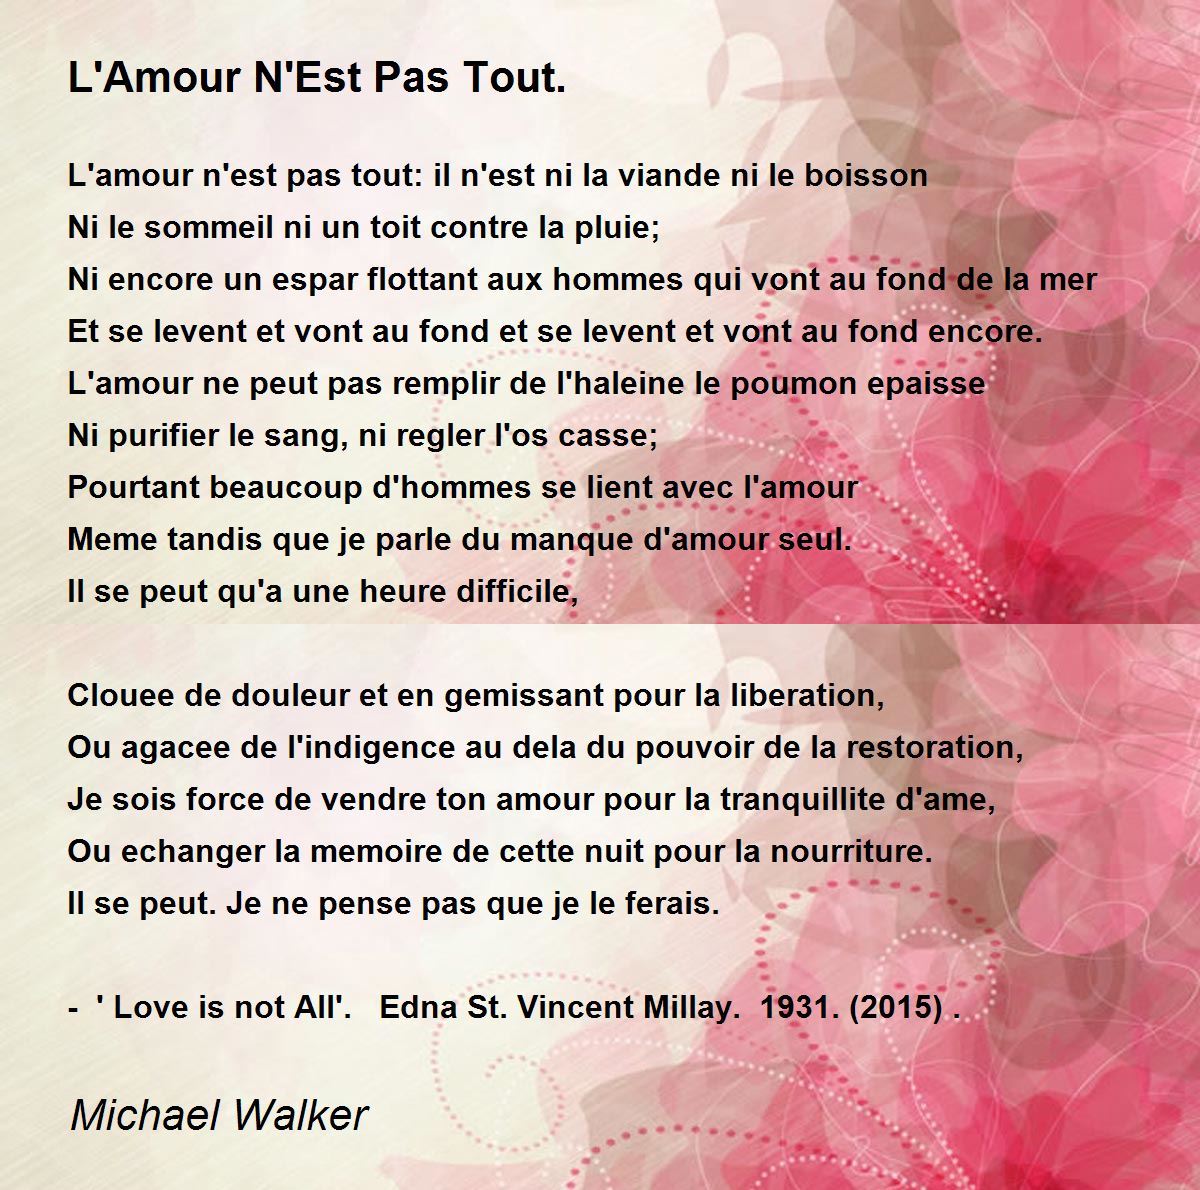 L'Amour N'Est Pas Tout. - L'Amour N'Est Pas Tout. Poem by Michael Walker